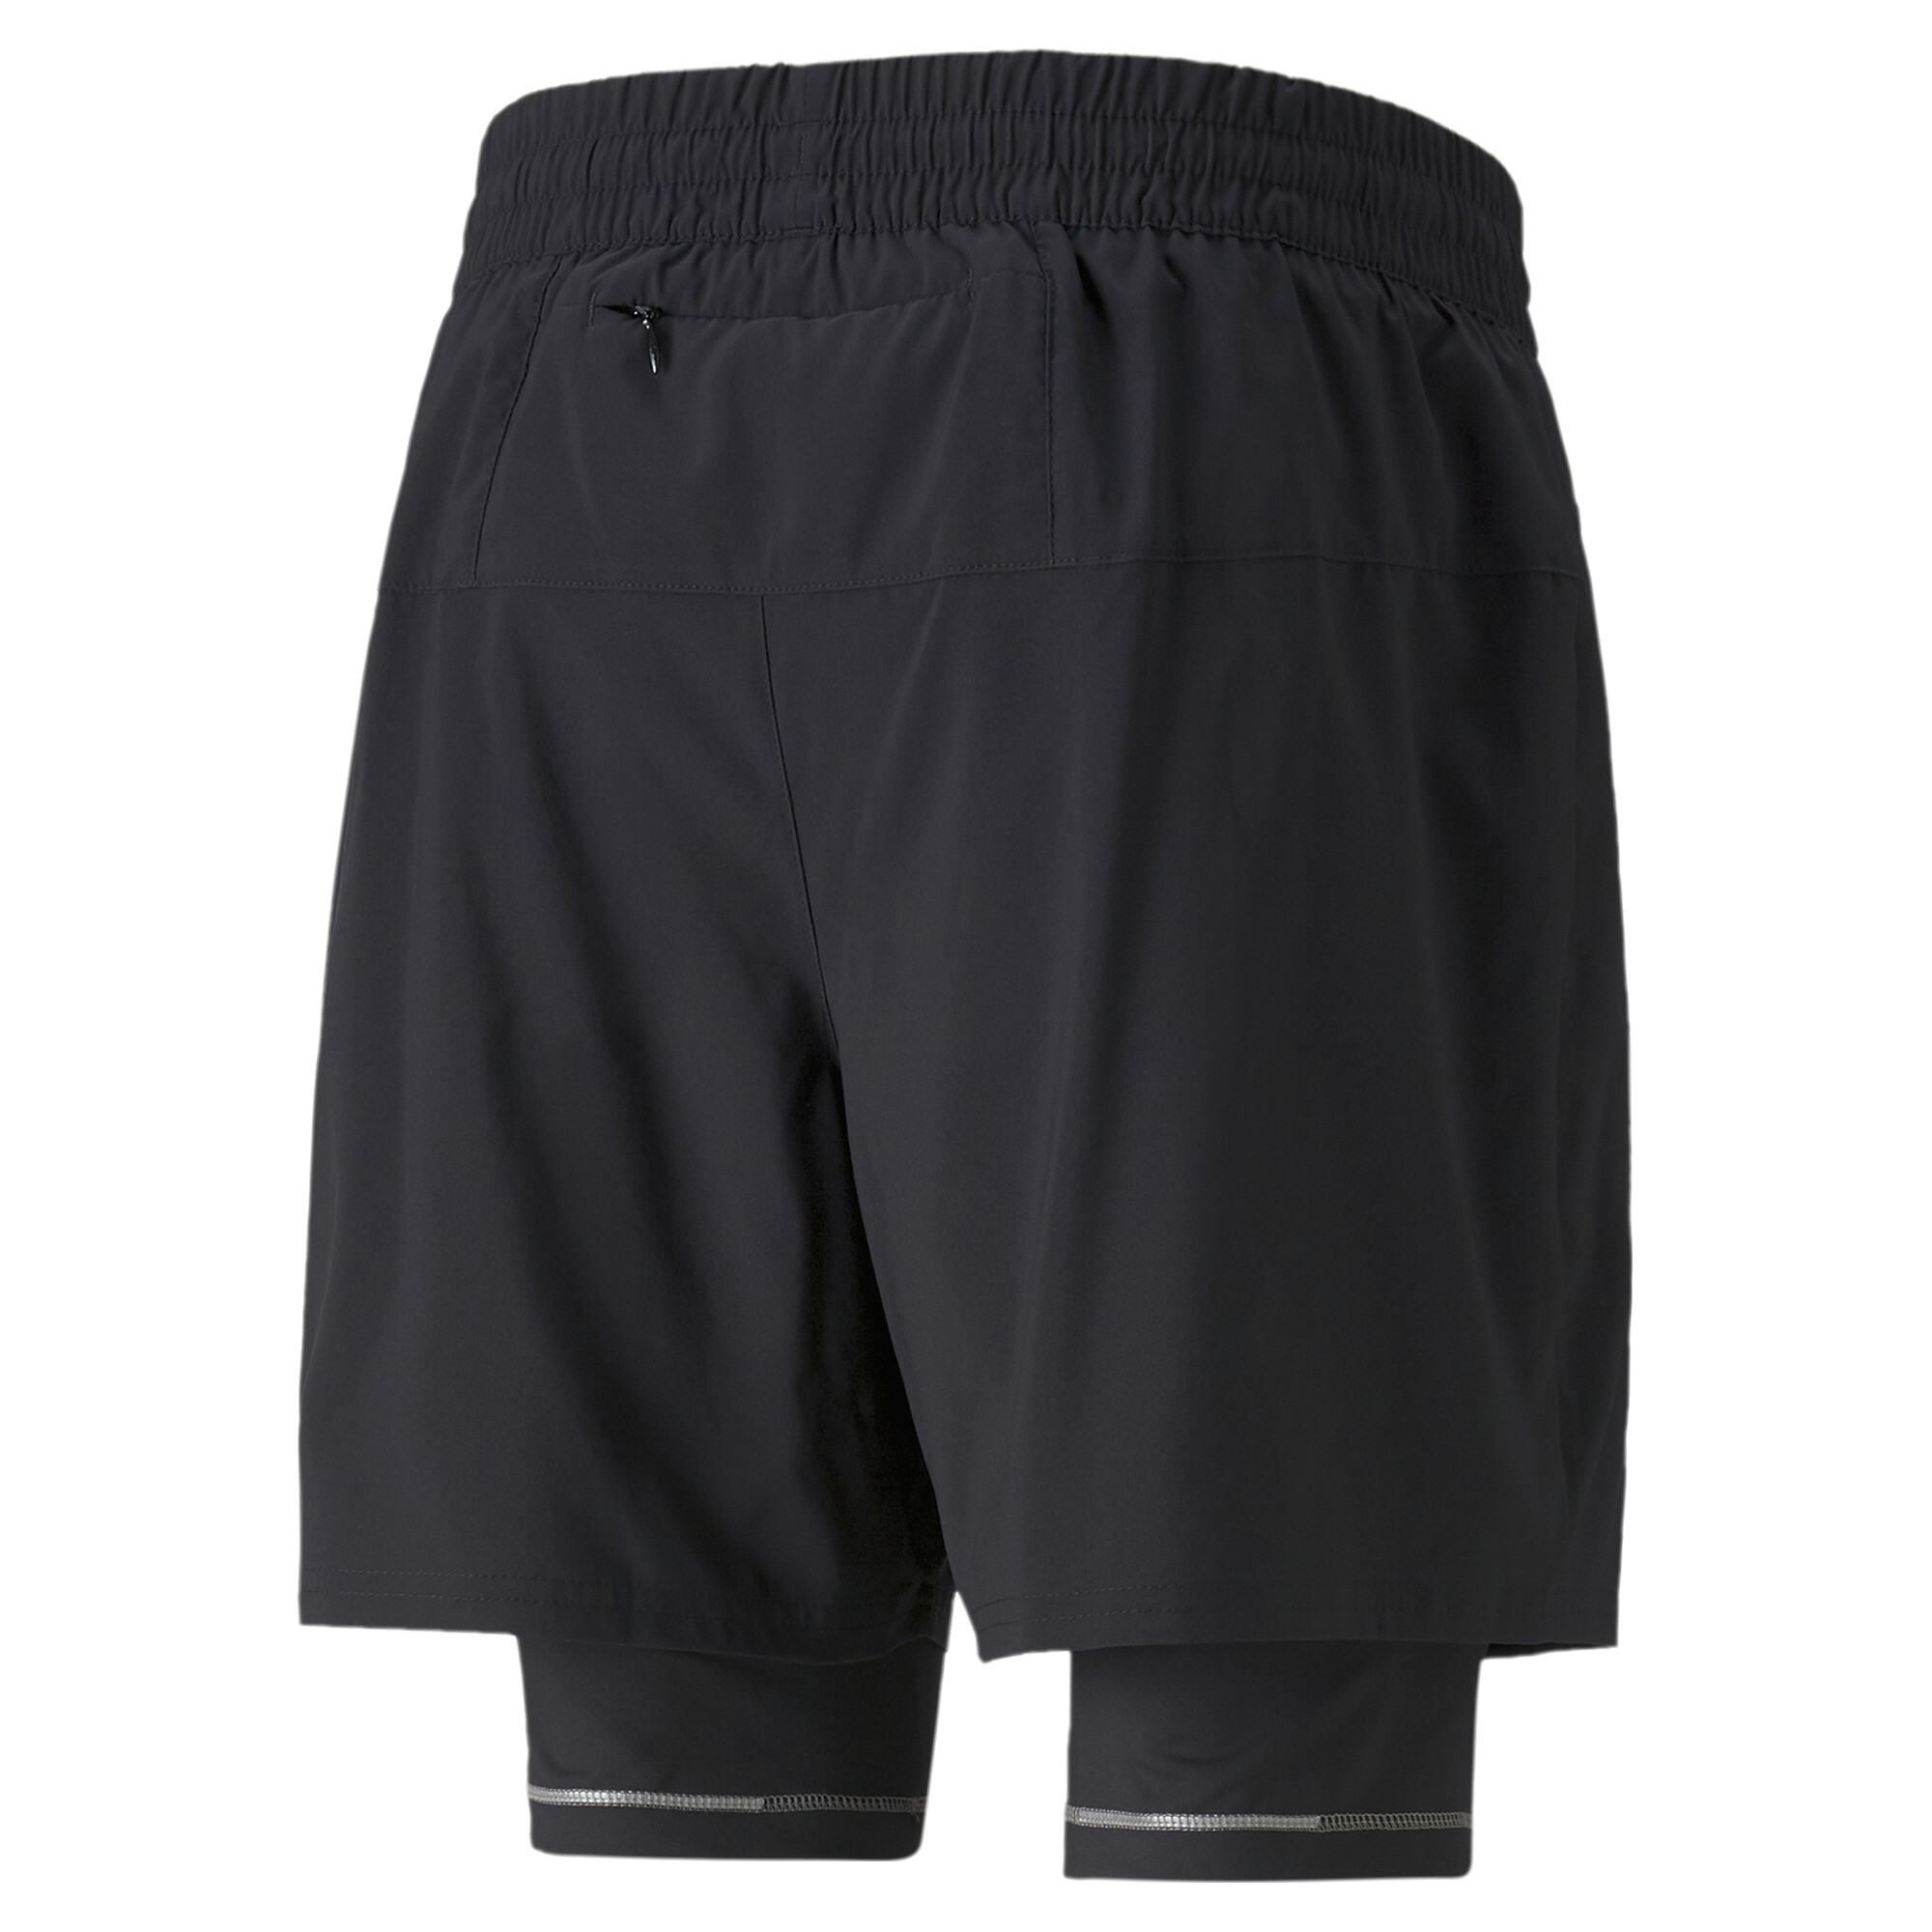 Men's PUMA Graphic 2-In-1 5â Running Shorts In Black, Size Large